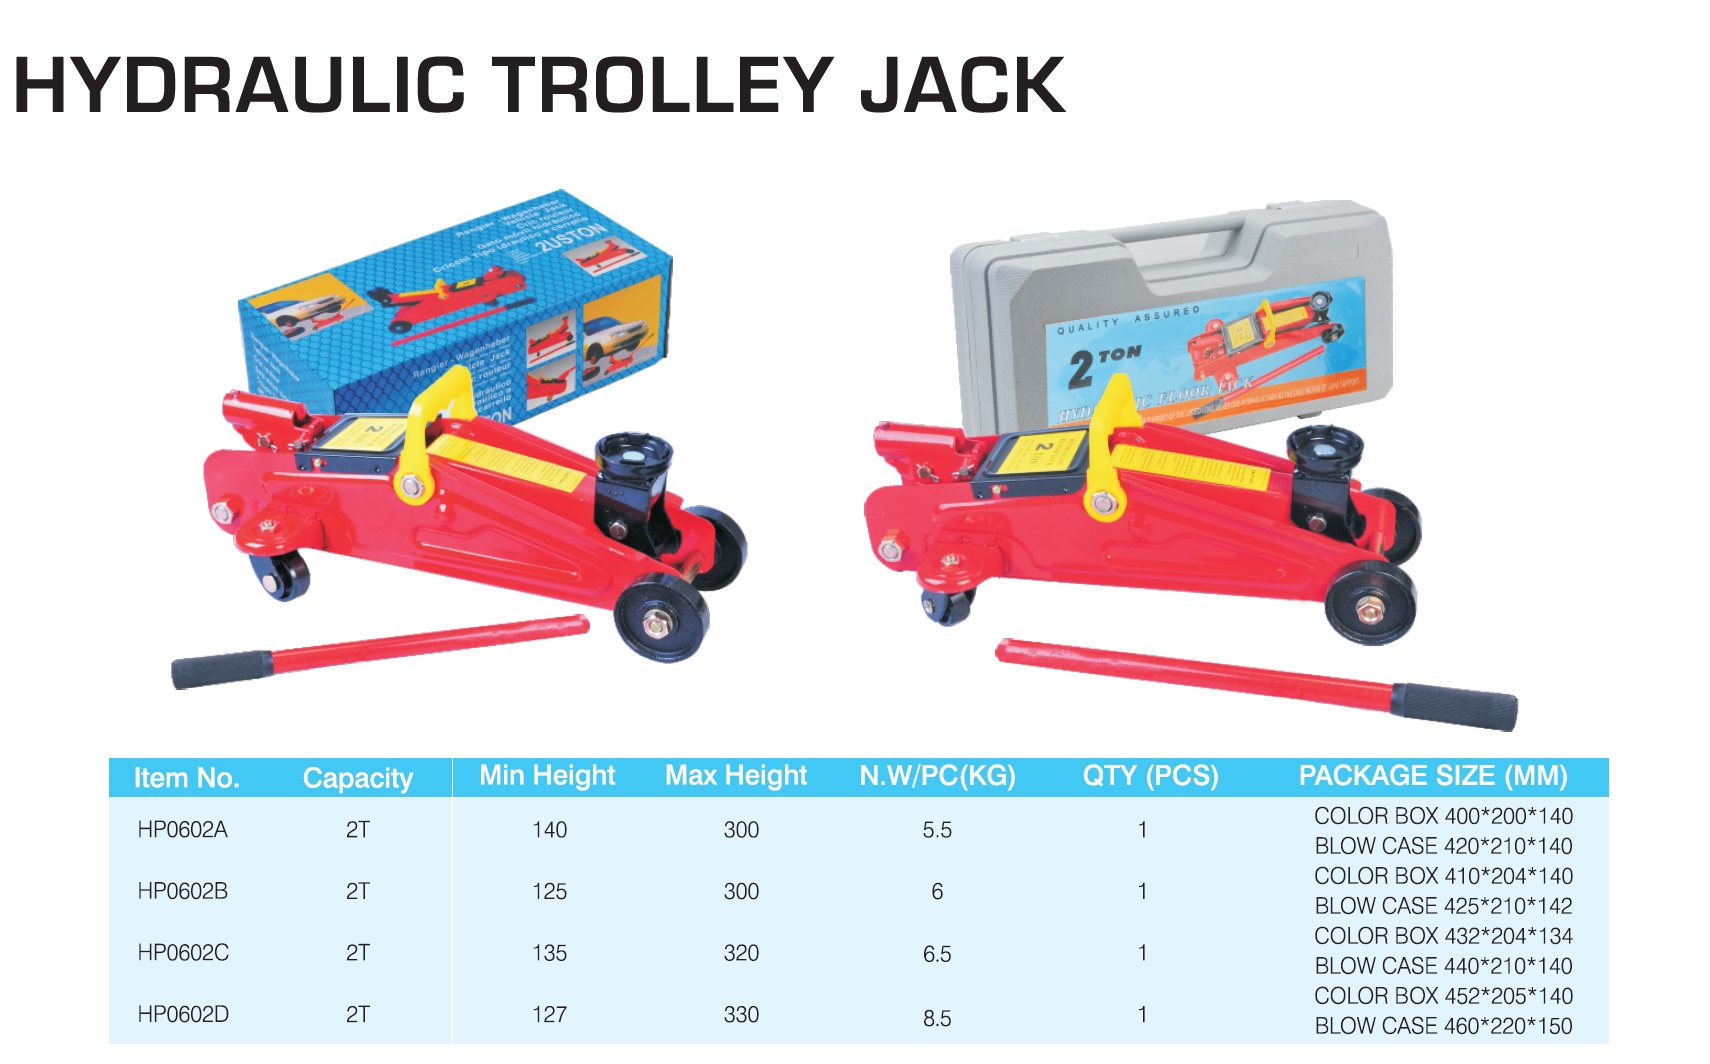 Hydraulic trolley jack.jpg